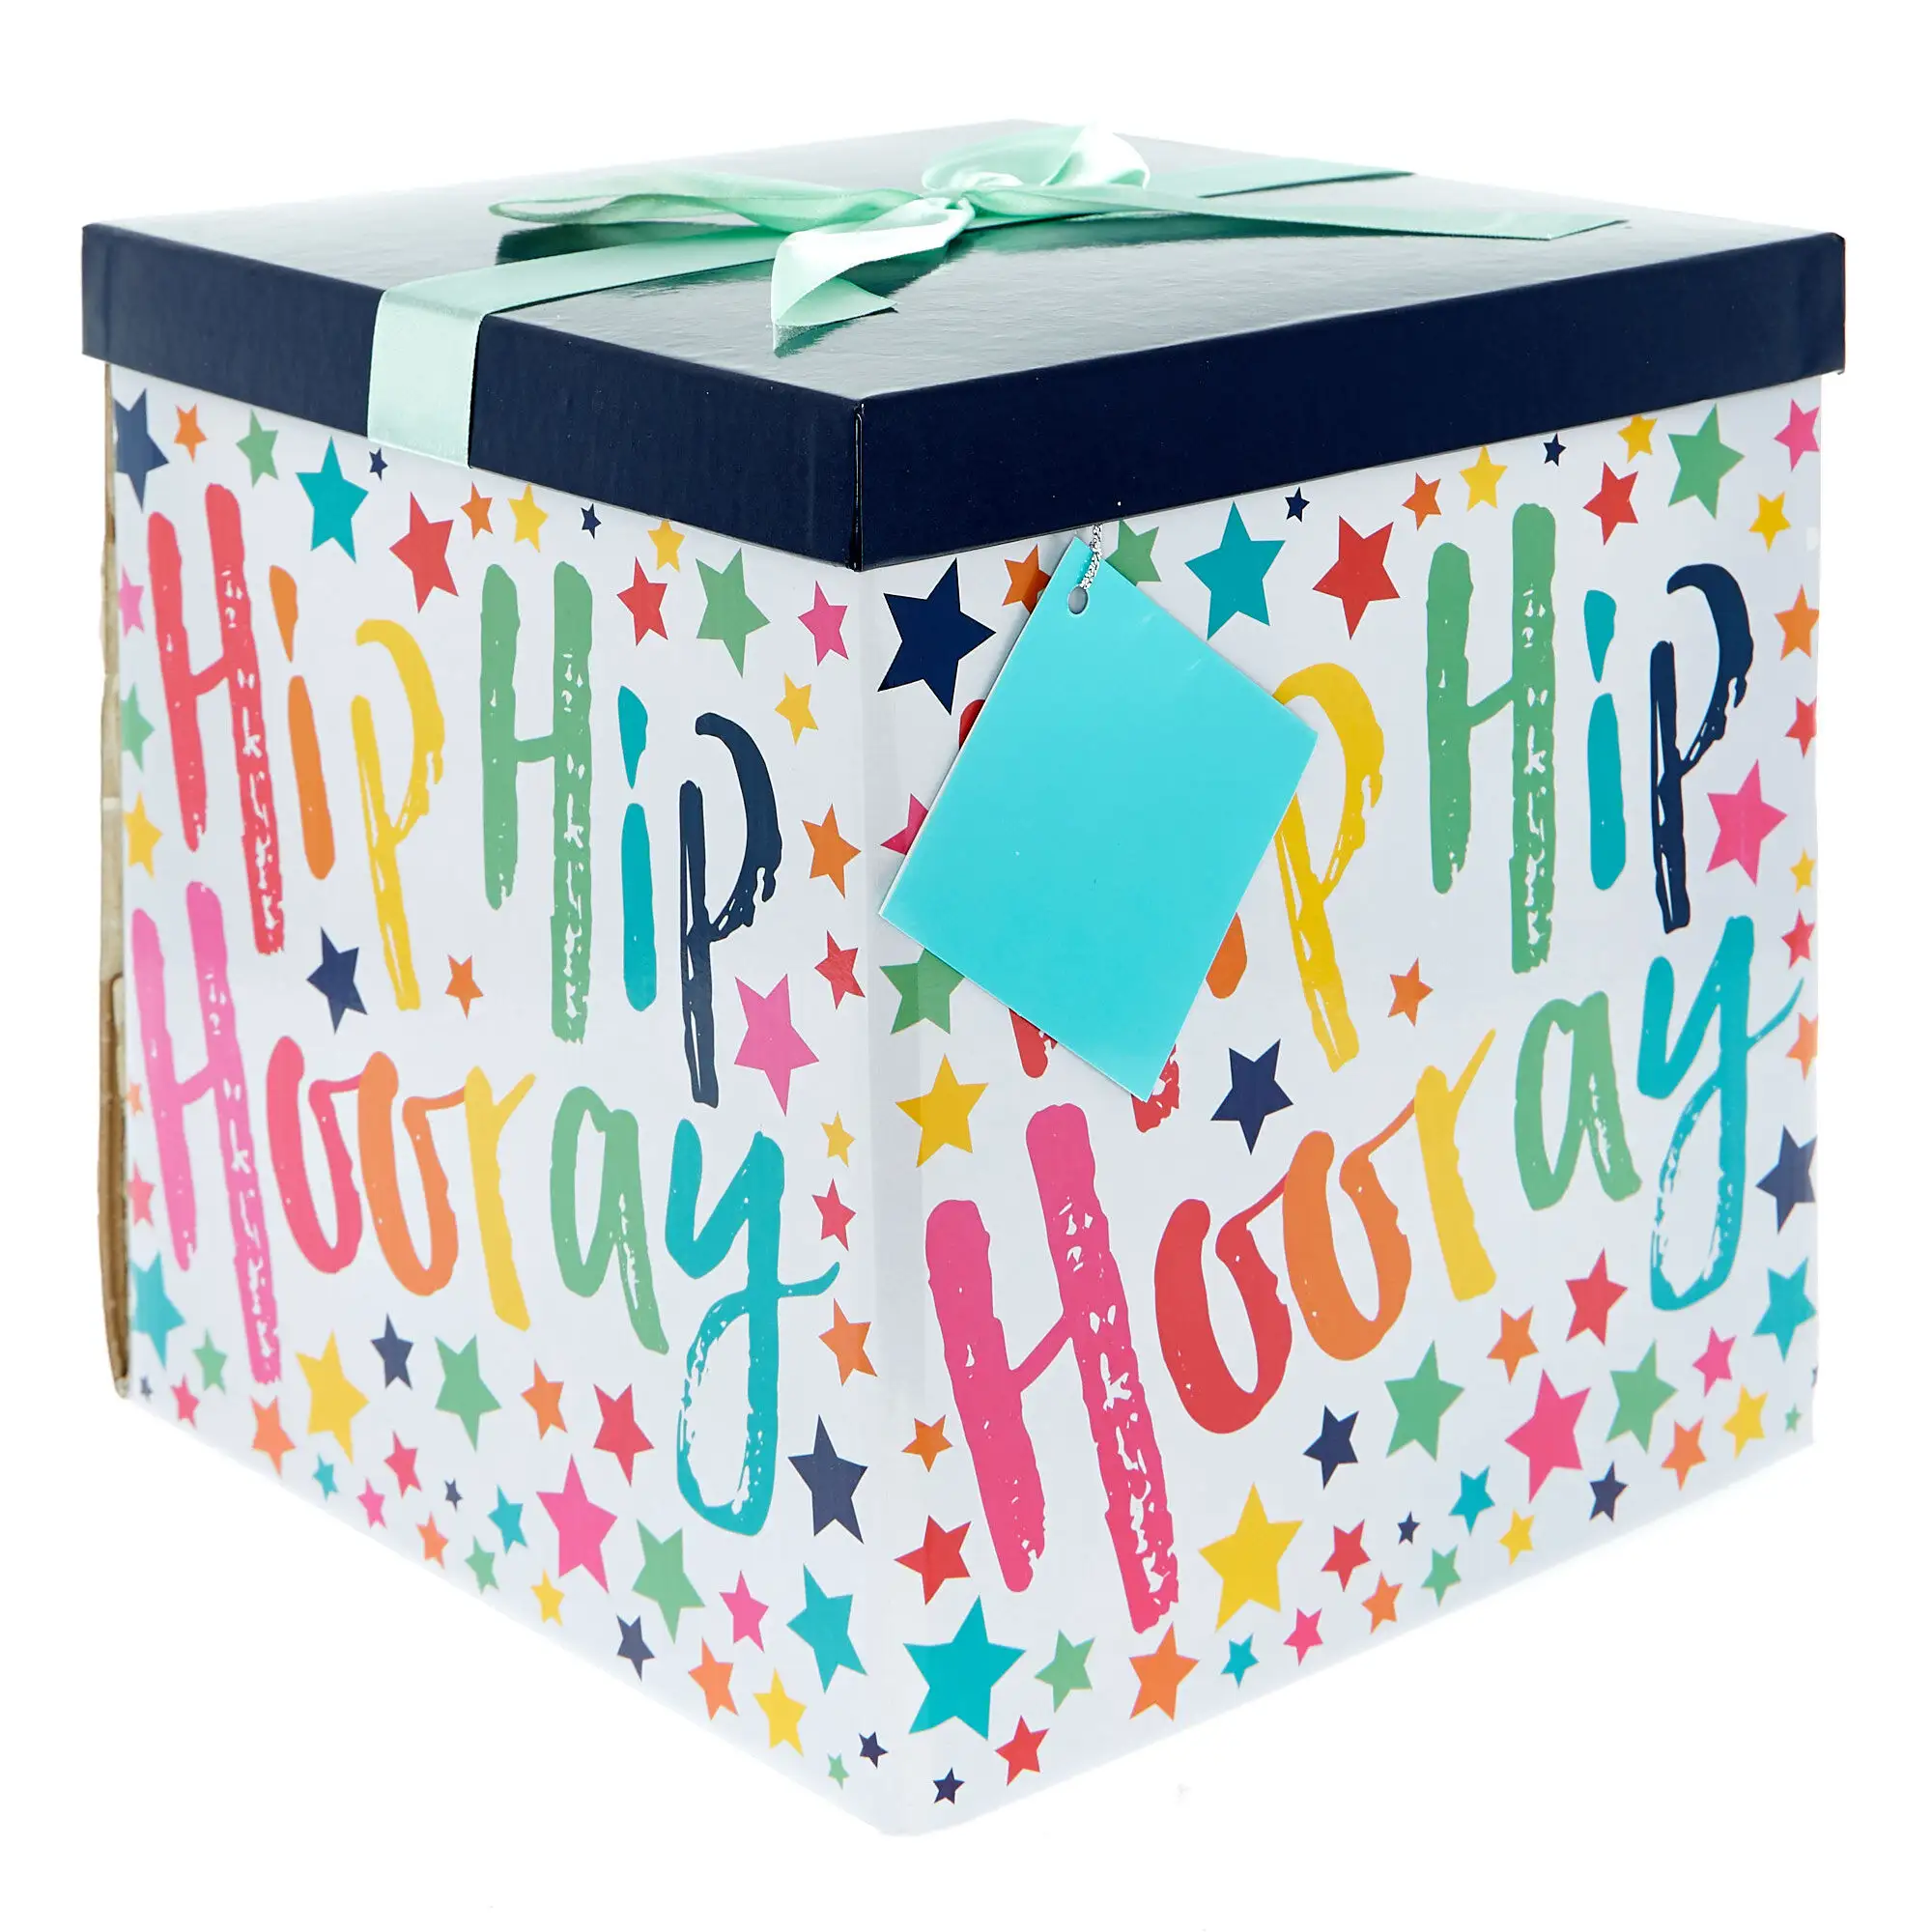 Индивидуальная печать радуги на день рождения очень большая плоская упаковка 2 мм картонная подарочная коробка с крышкой